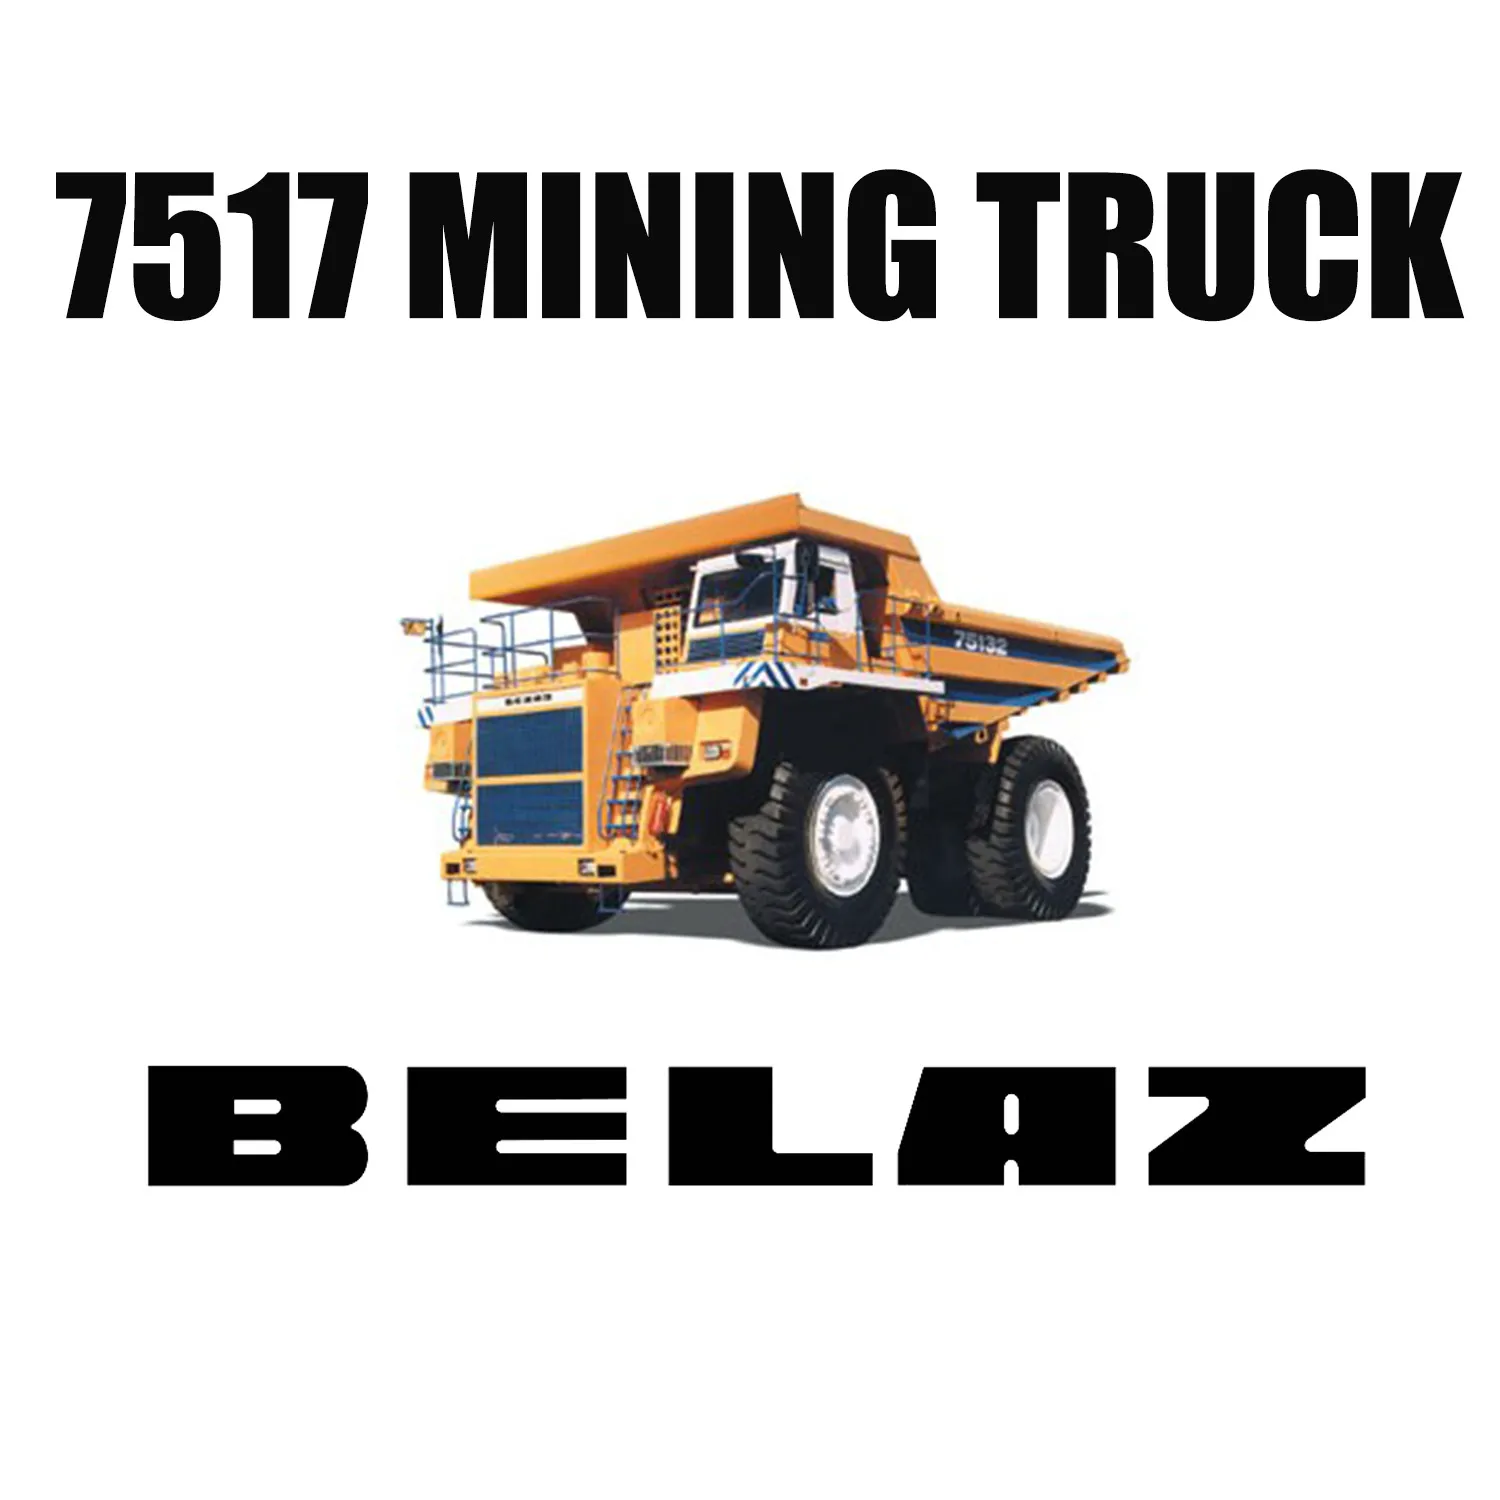 Neumáticos para minería fuera de carretera 36.00R51 instalados en BELAZ-7517 para mina de carbón